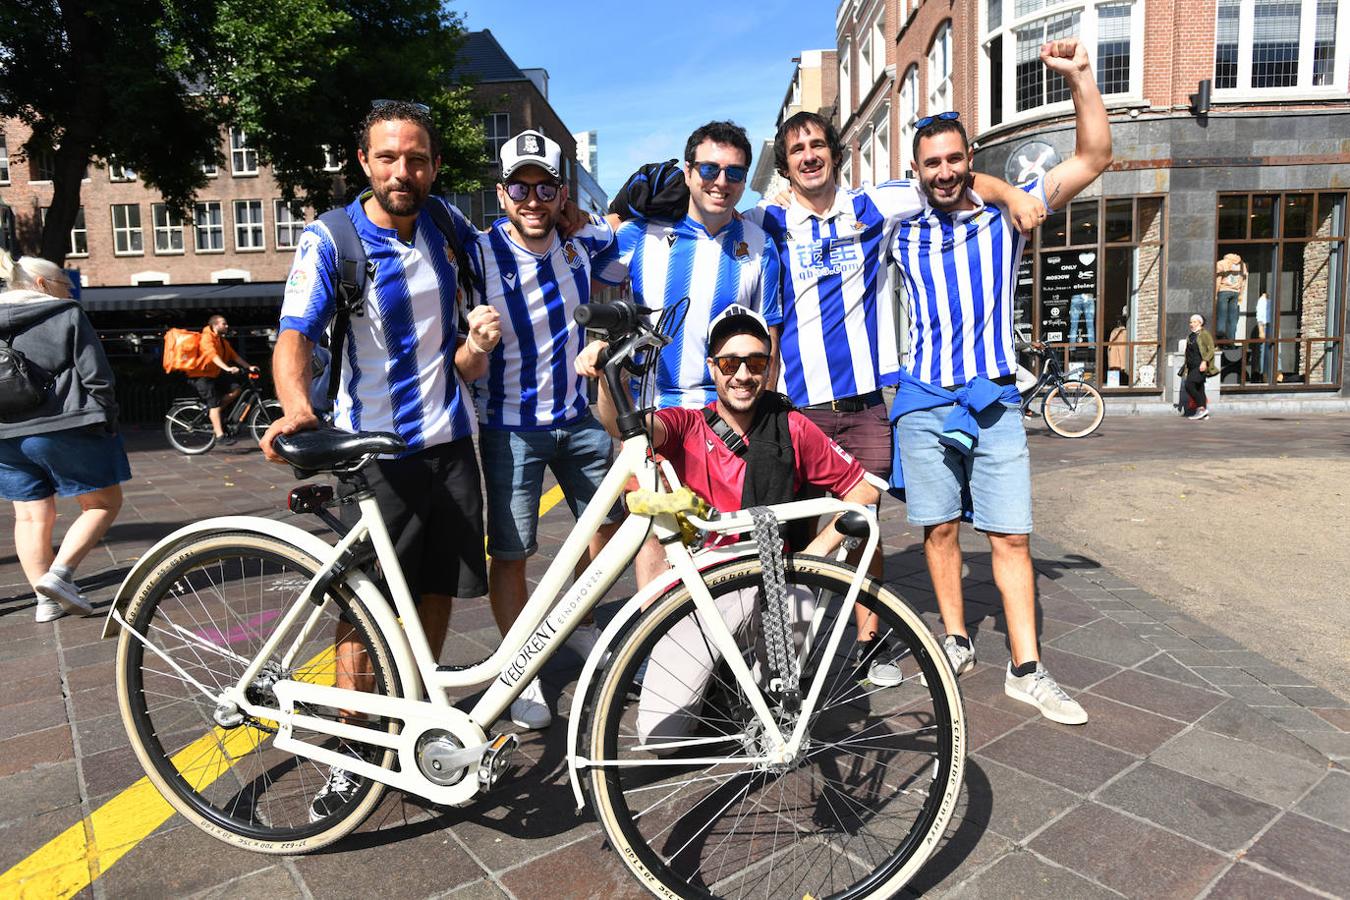 PSV - Real Sociedad: Ambiente txuri-urdin en las calles de Eindhoven